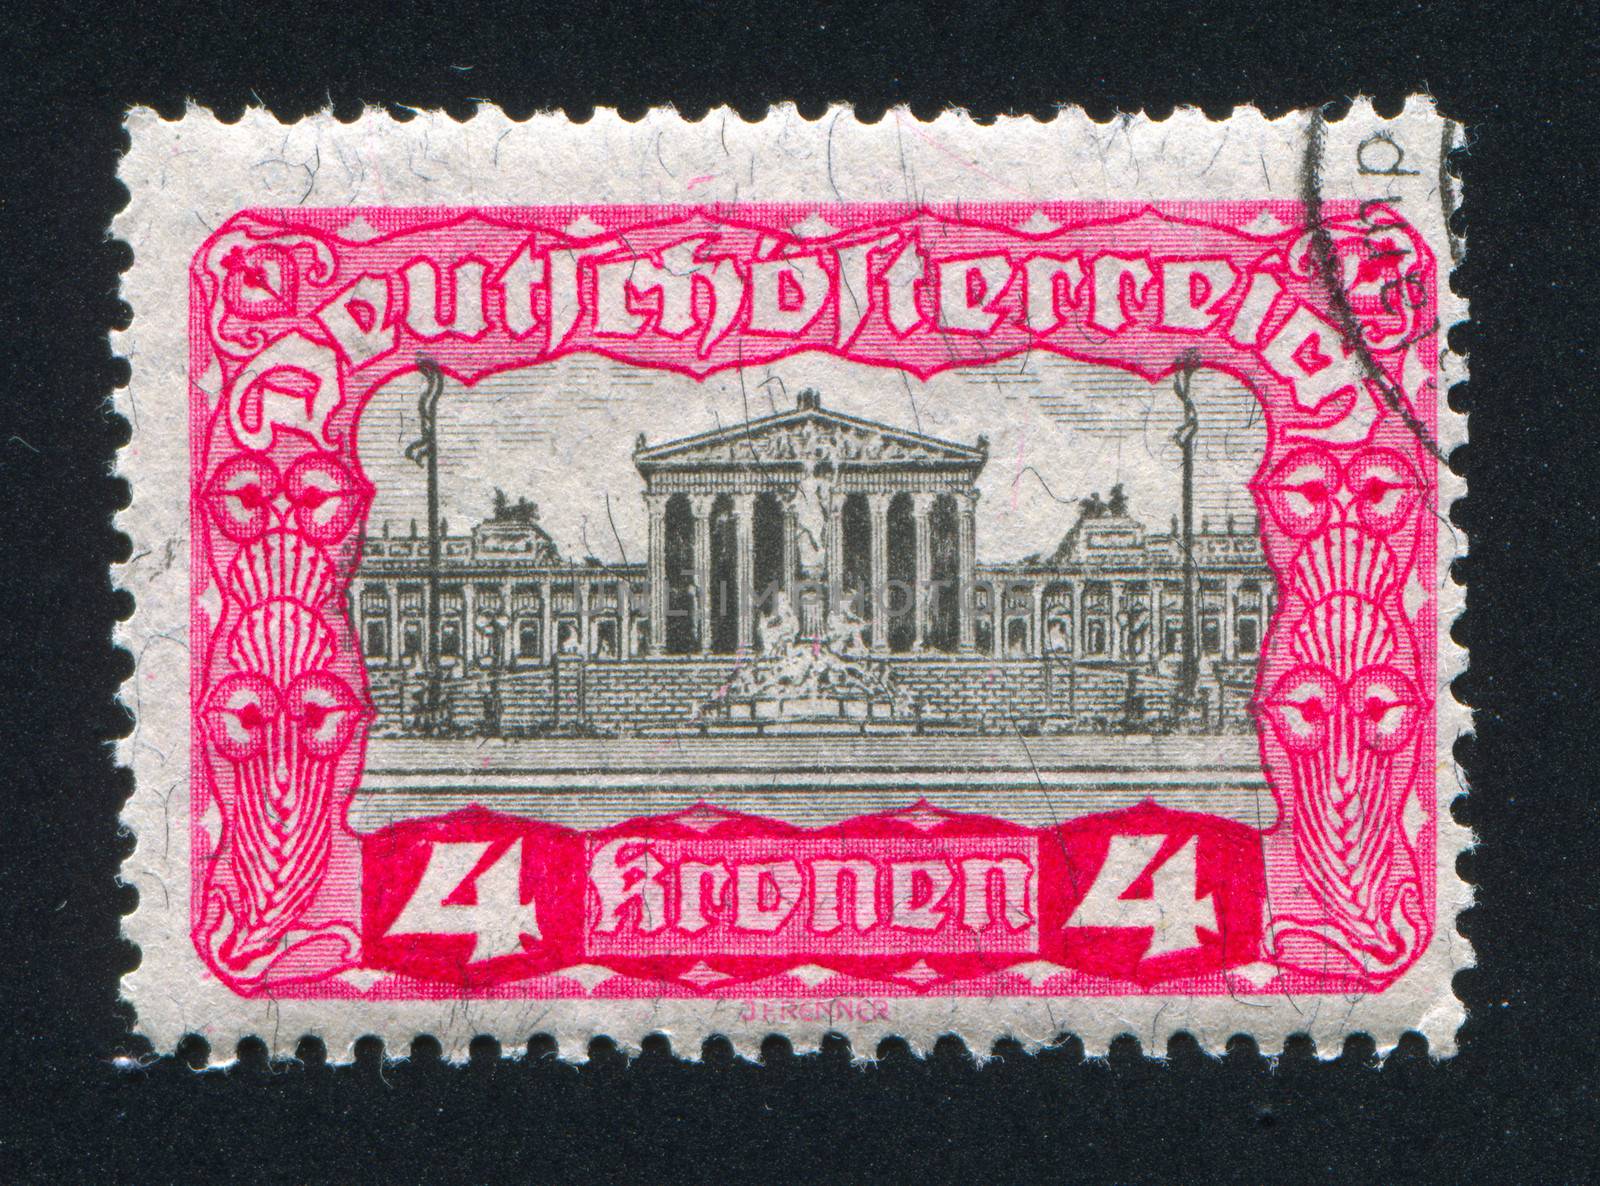 AUSTRIA - CIRCA 1919: stamp printed by Austria, shows Parliament
Building, circa 1919